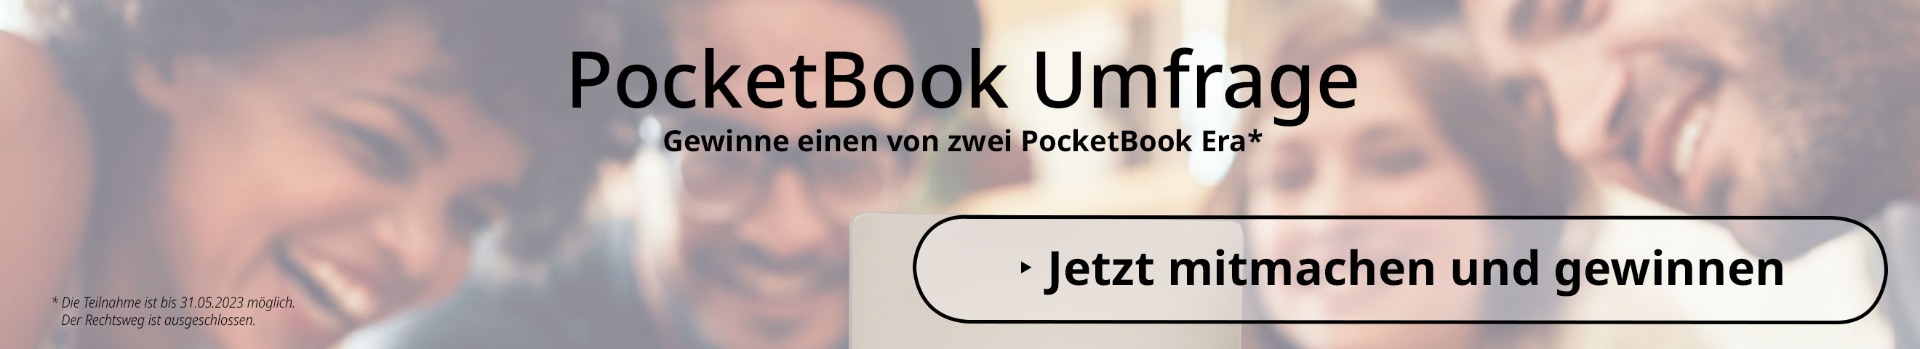 PocketBook Umfrage